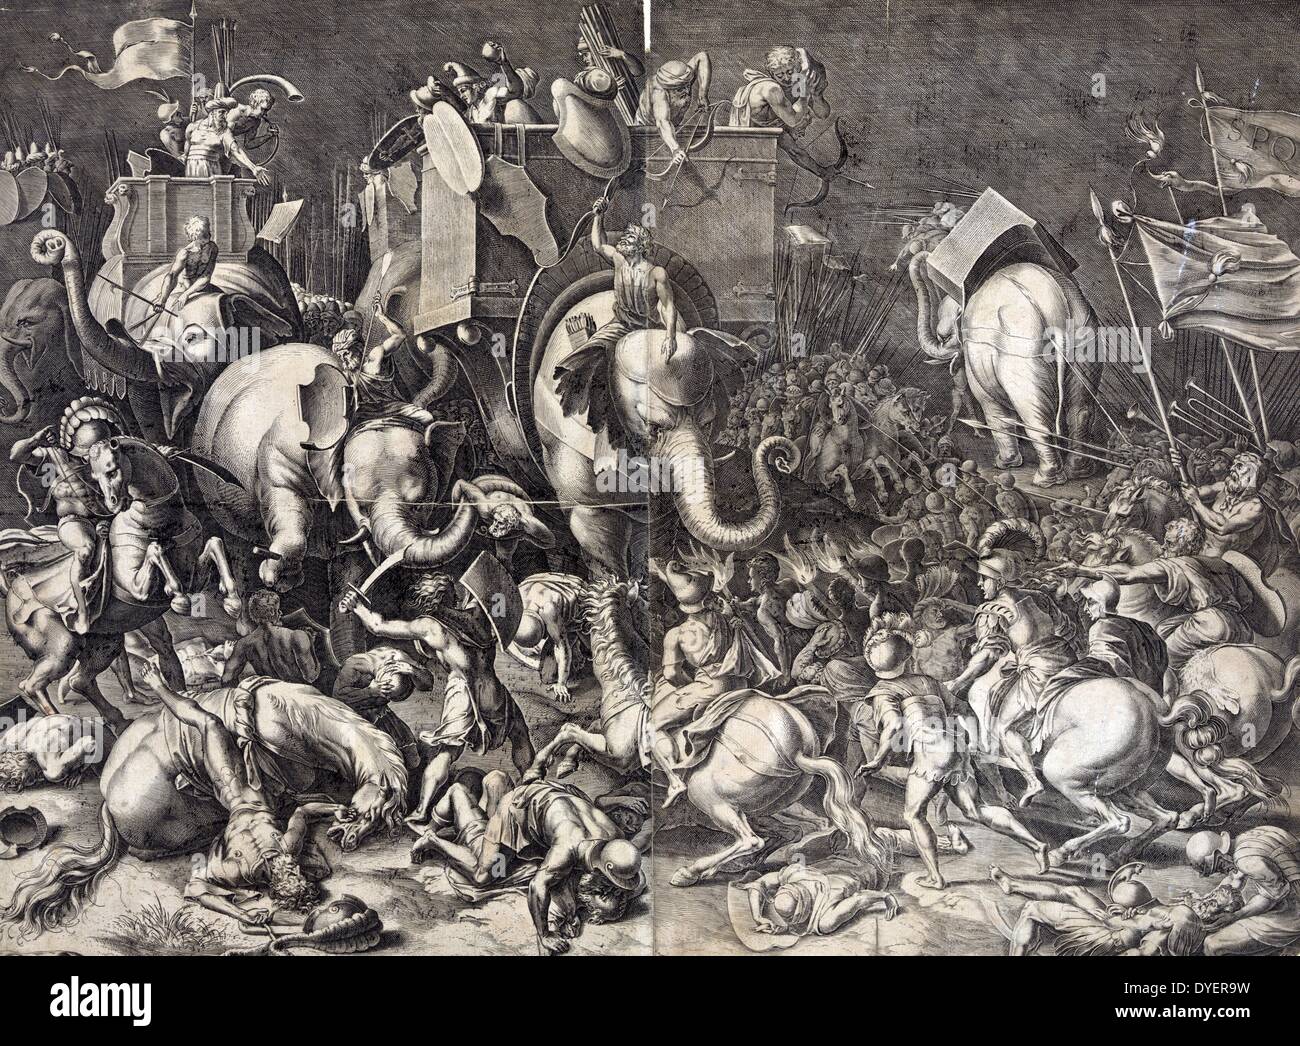 Drucken Übersicht Scipio Africanus zu Pferd mit römischen Soldaten Hannibal engagieren, Reitschule einen Krieg Elefanten, während der Schlacht von Zama, 202 v. Chr. Stich nach dem Gemälde von Cornelis Cort. Stockfoto